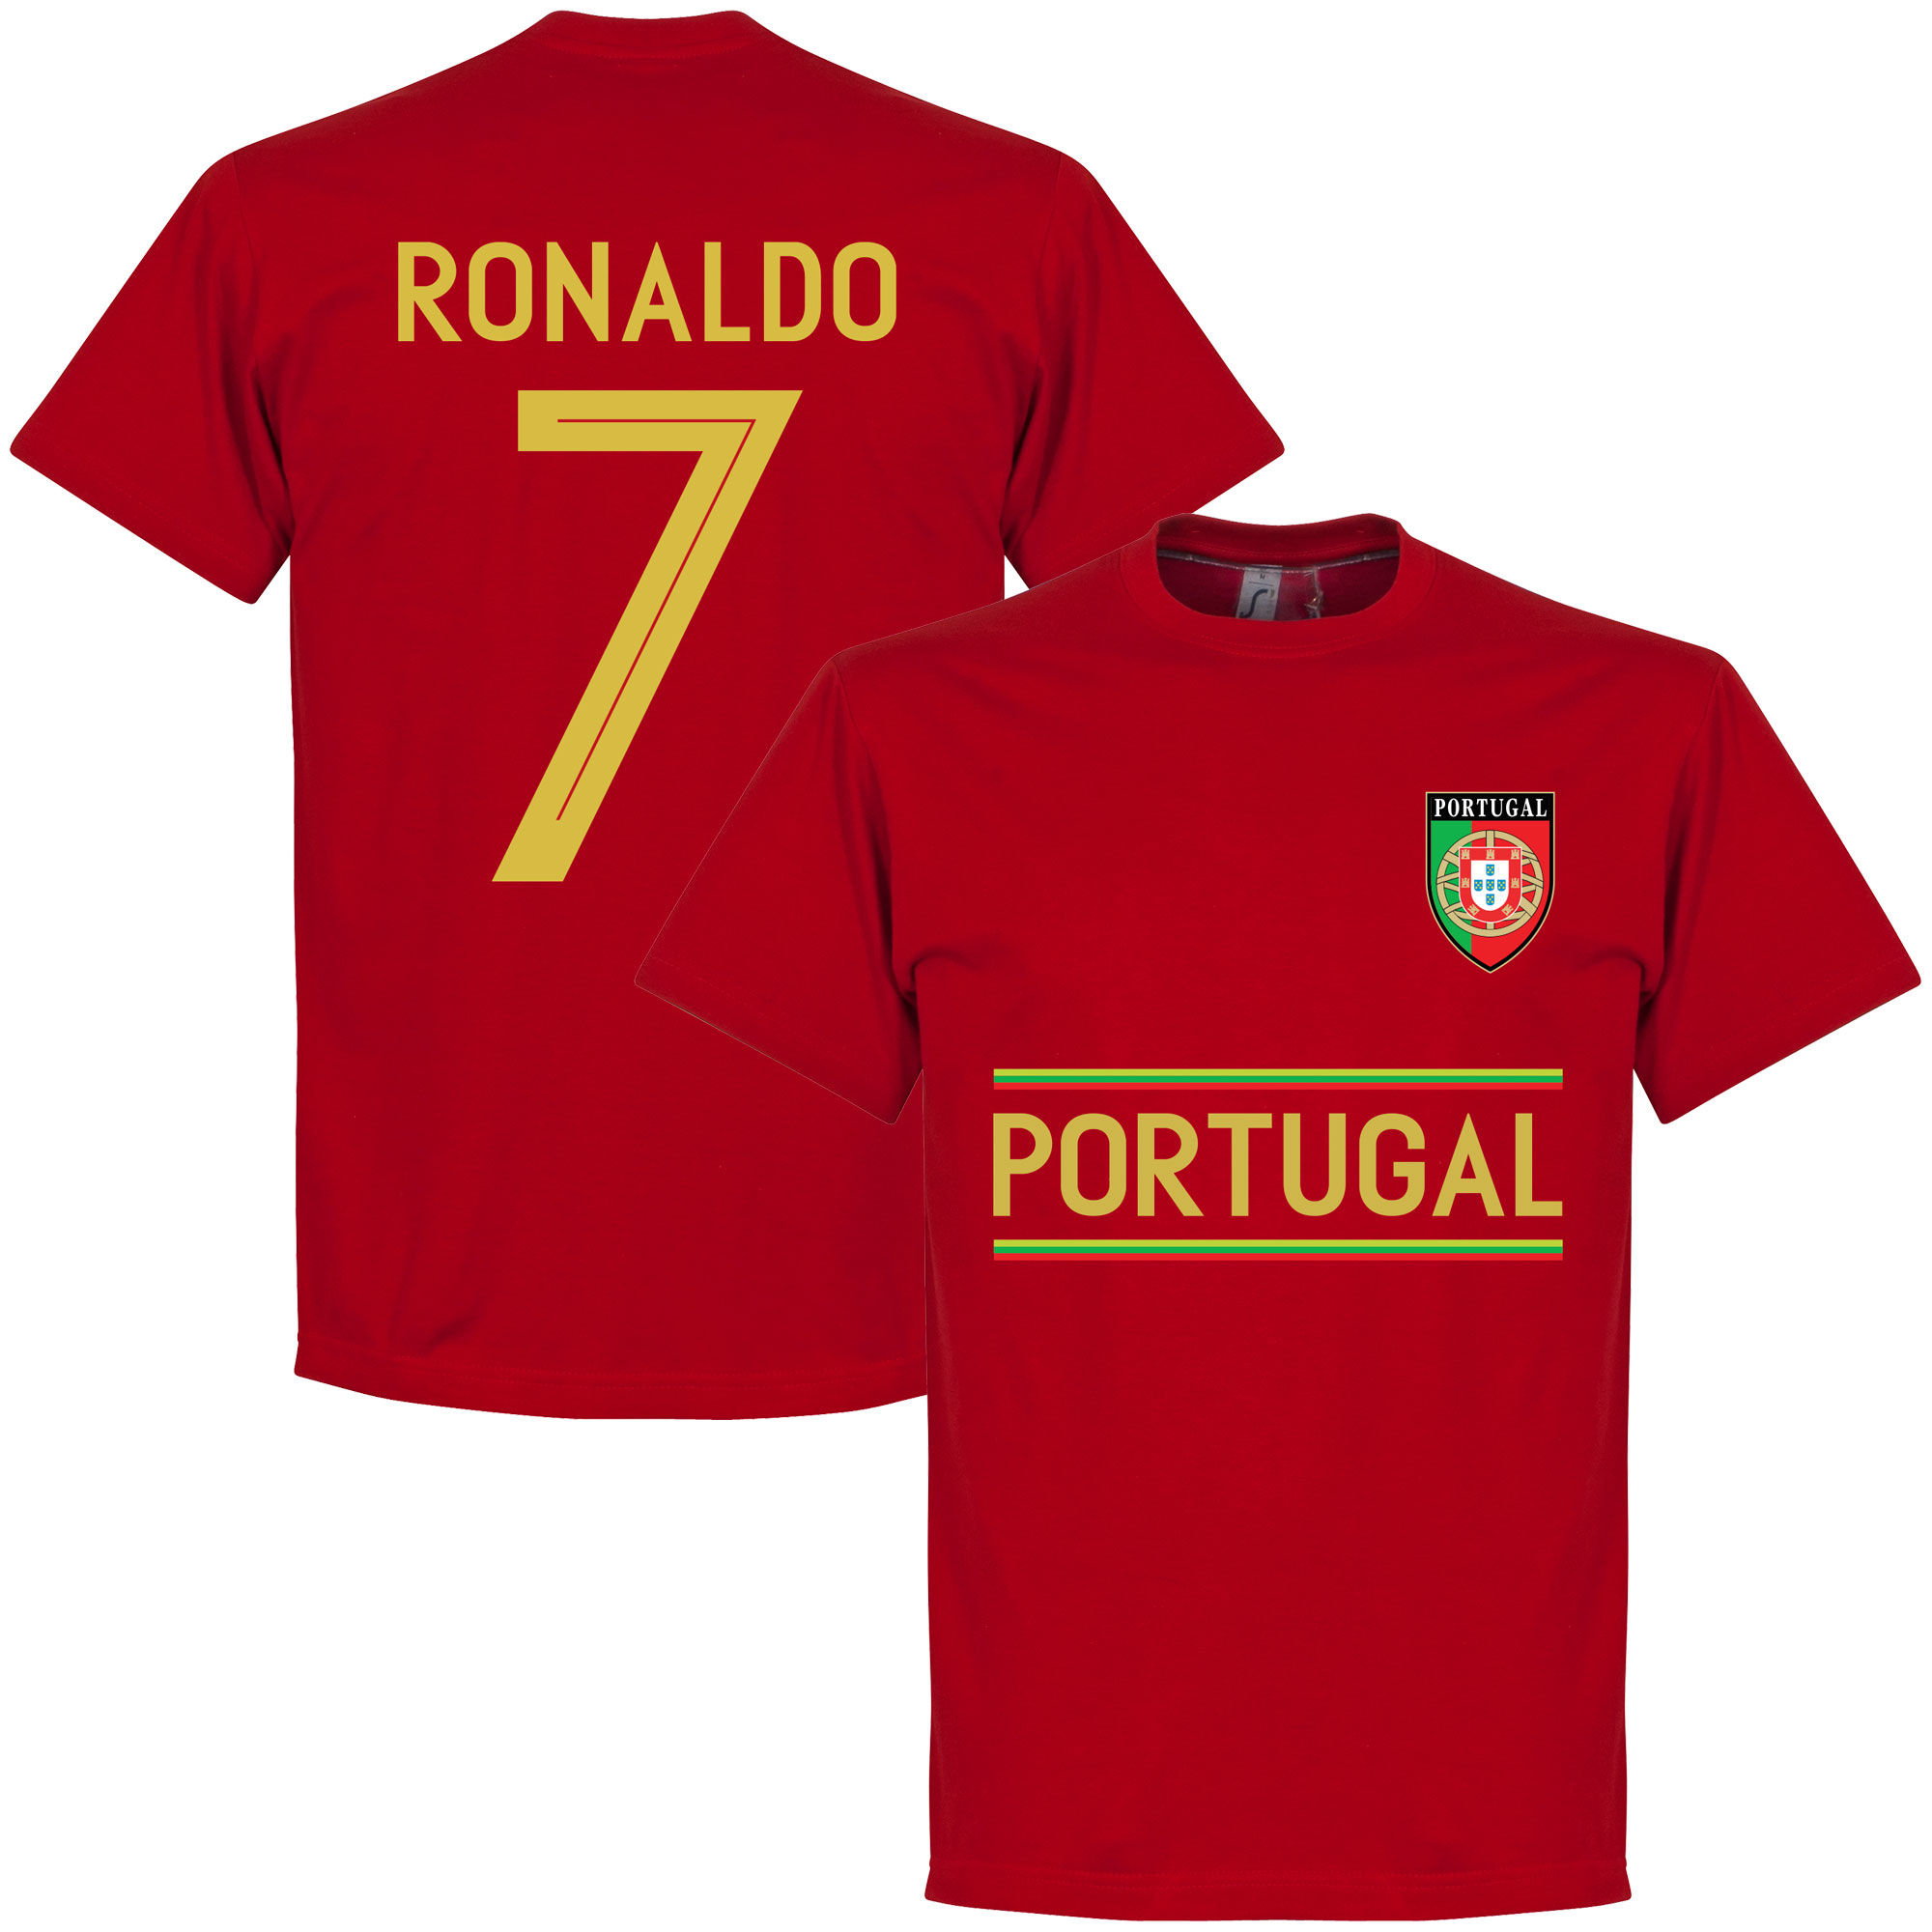 Portugalsko - Tričko - červené, Ronaldo, číslo 7